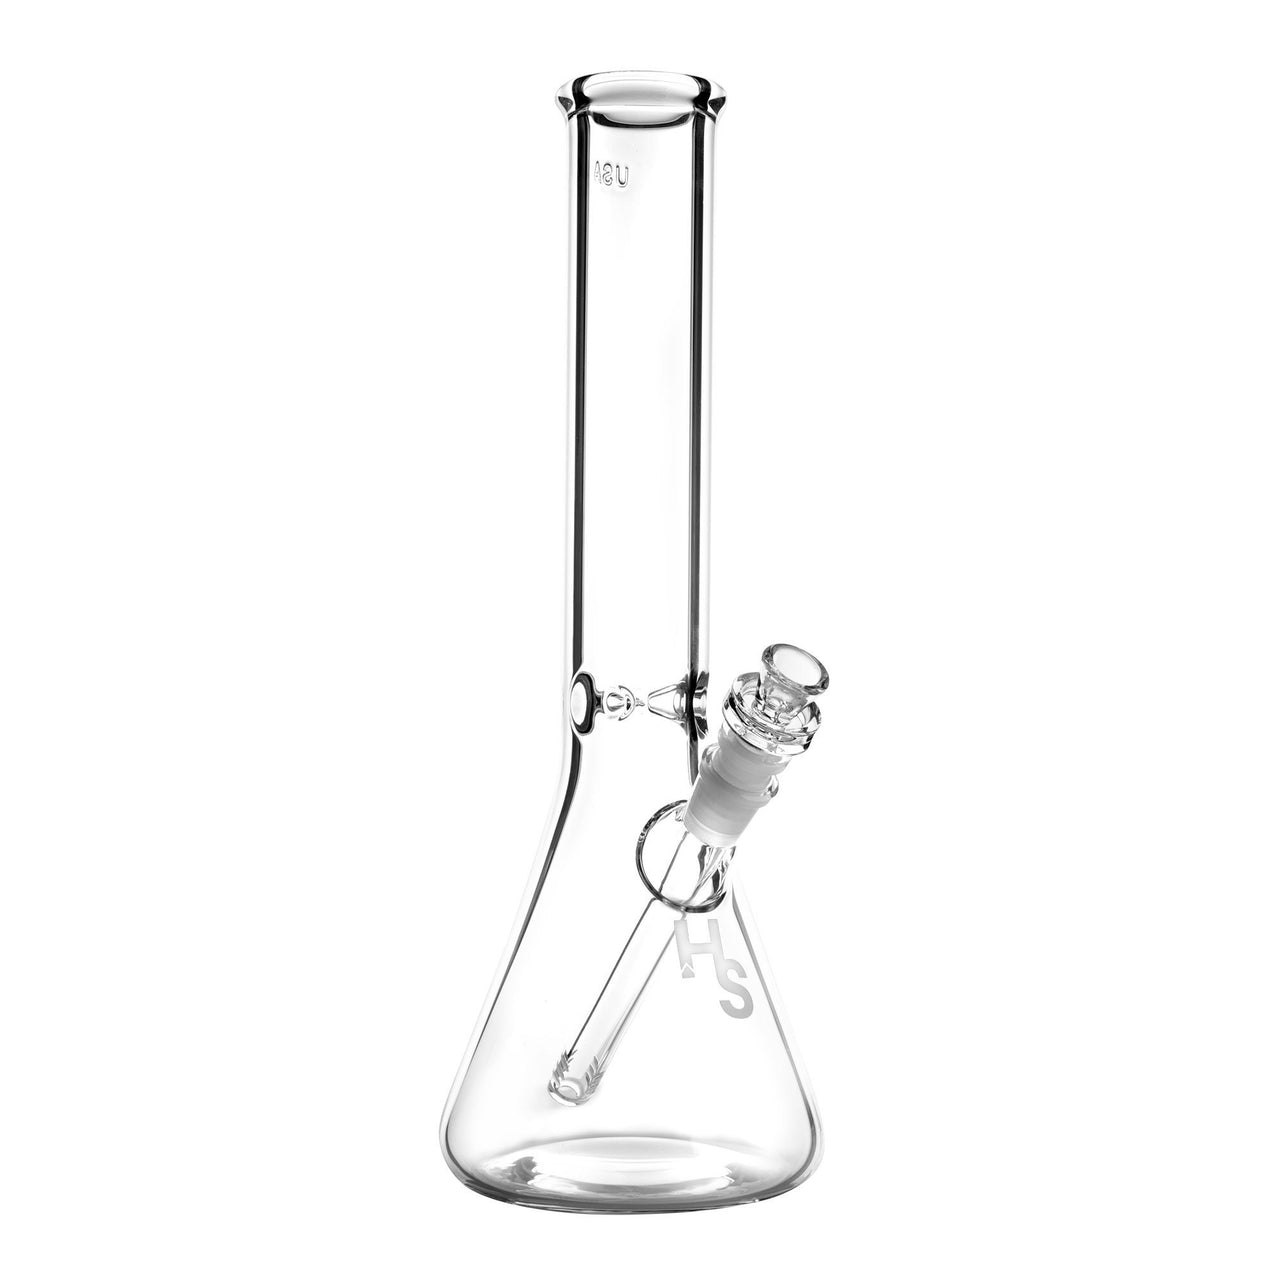 https://www.420science.com/cdn/shop/products/higher-standards-14in-heavy-duty-beaker-bong-kit-bongs-water-pipes-420-science-540183.jpg?v=1621500937&width=1280